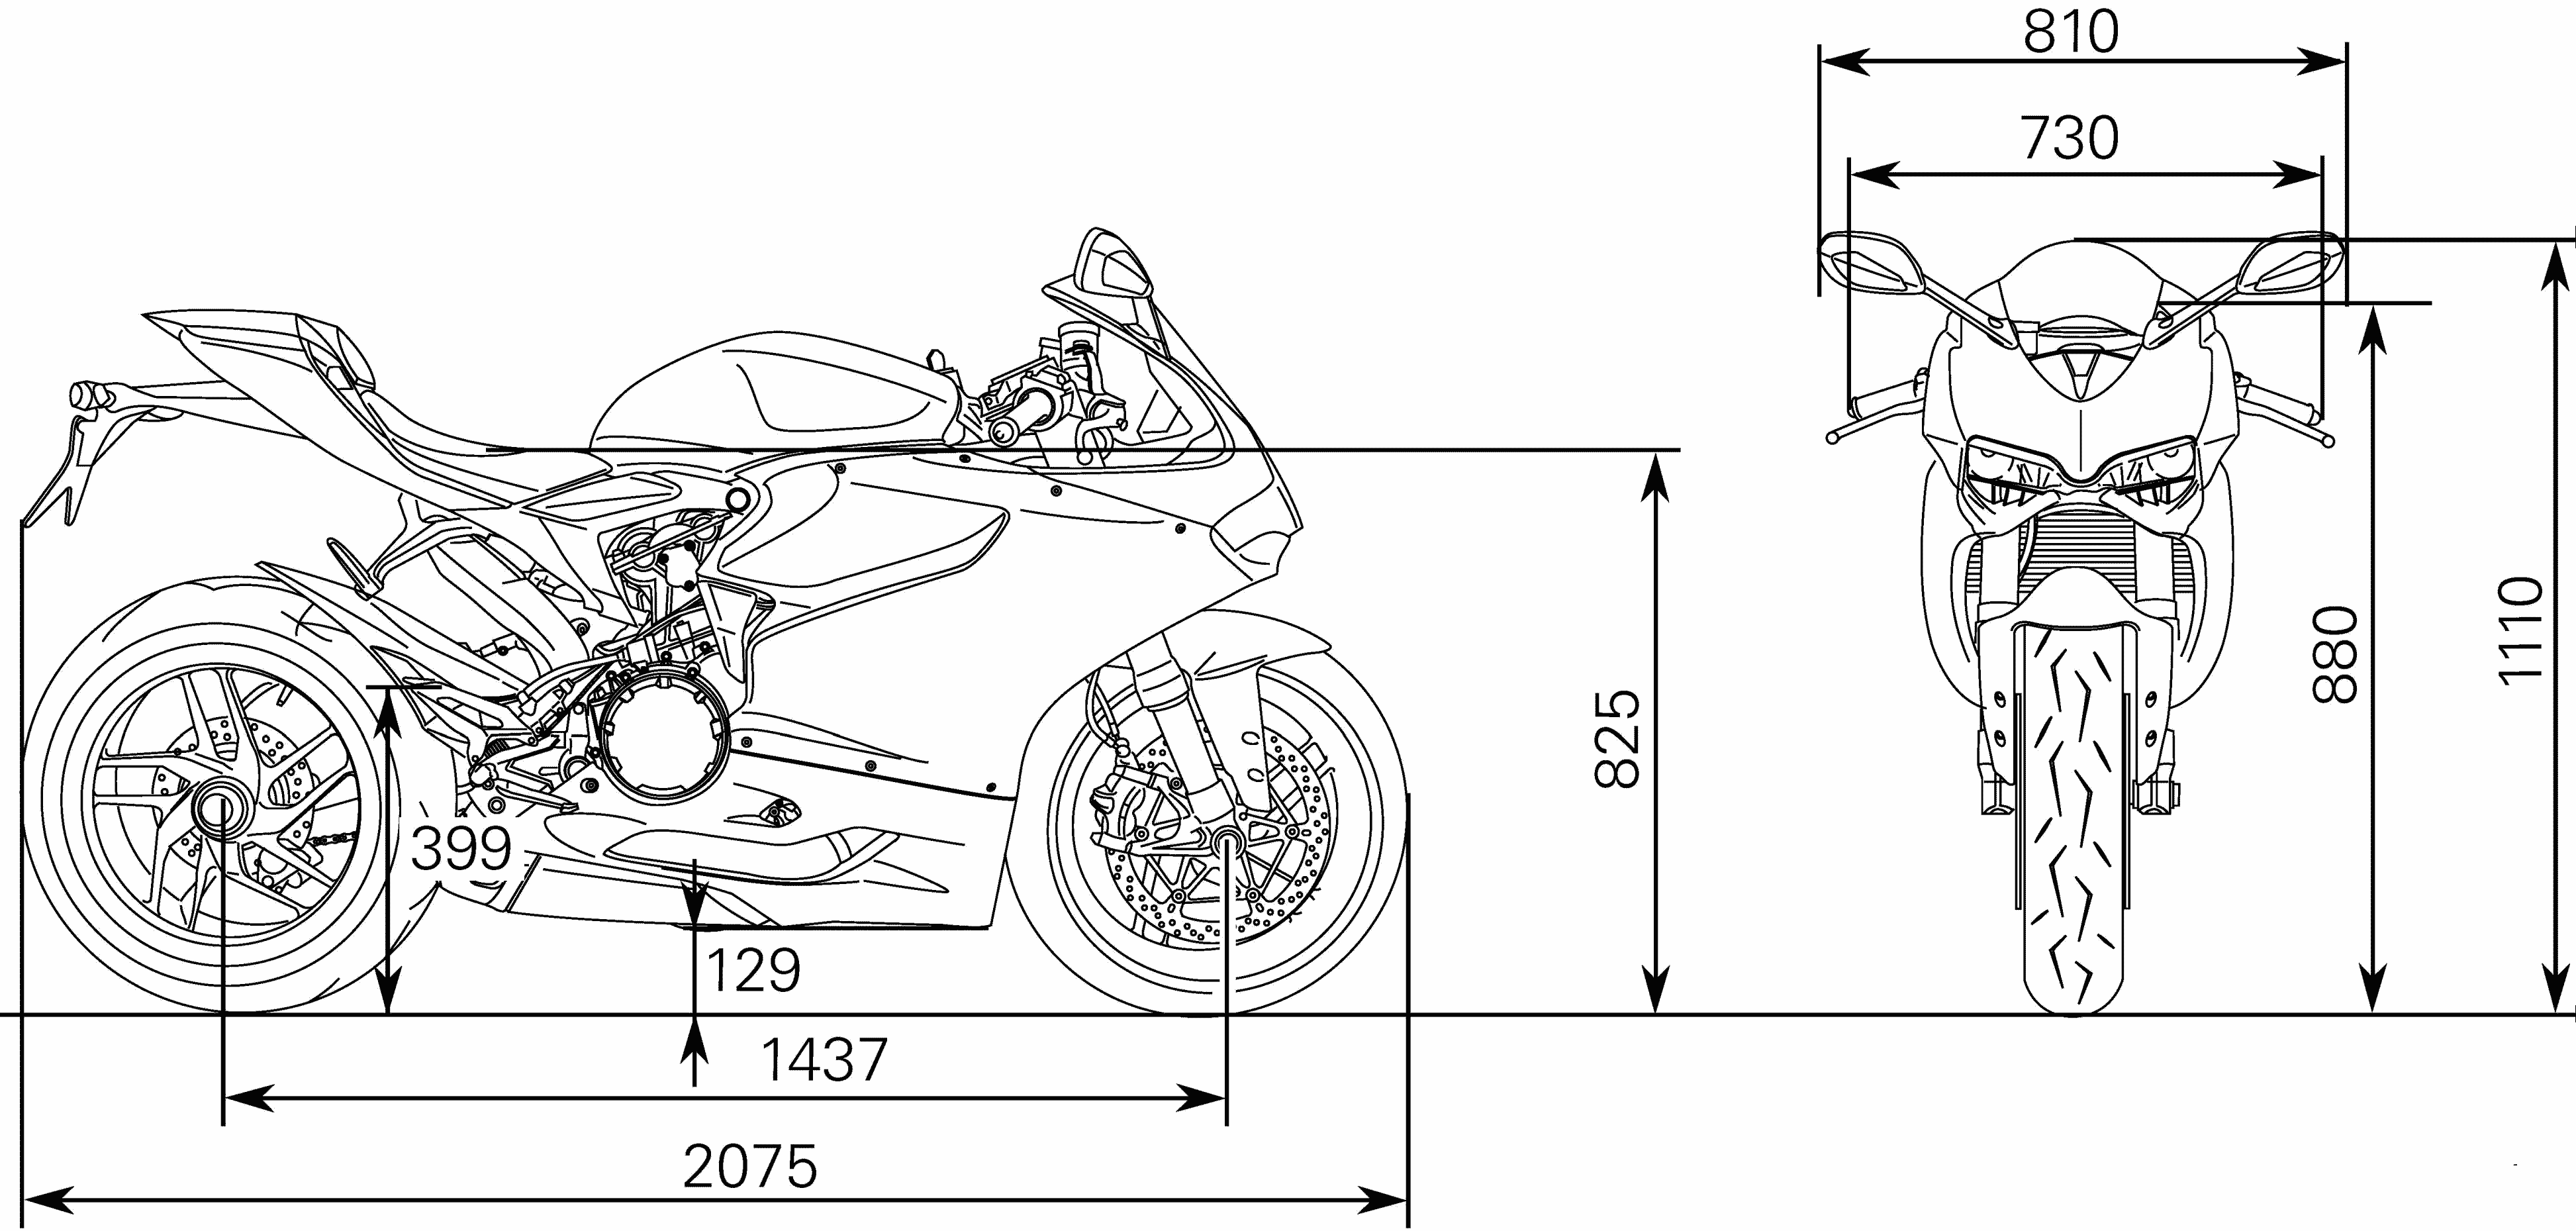 Ducati 1199 blueprint